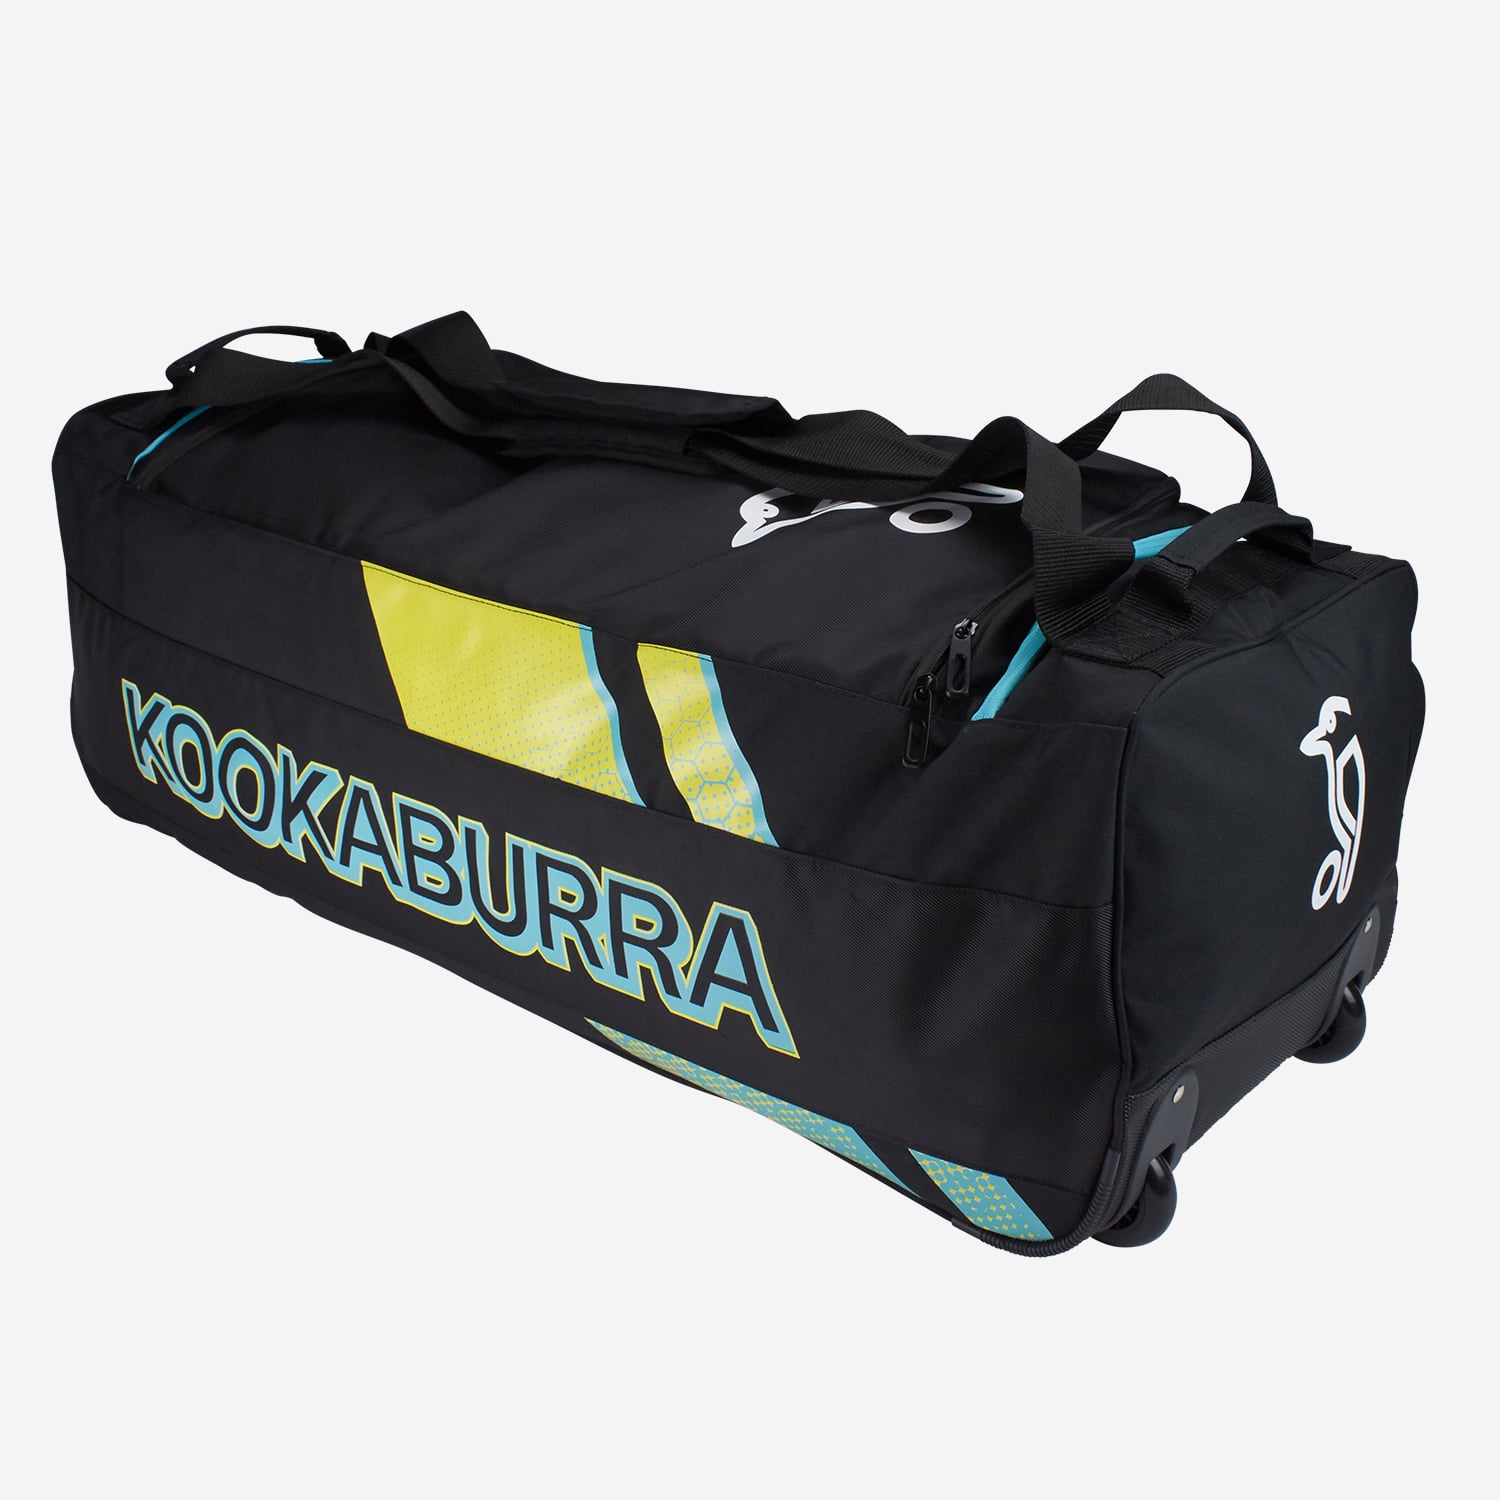 Kookaburra Rapid Pro 3.5 Wheelie Bag